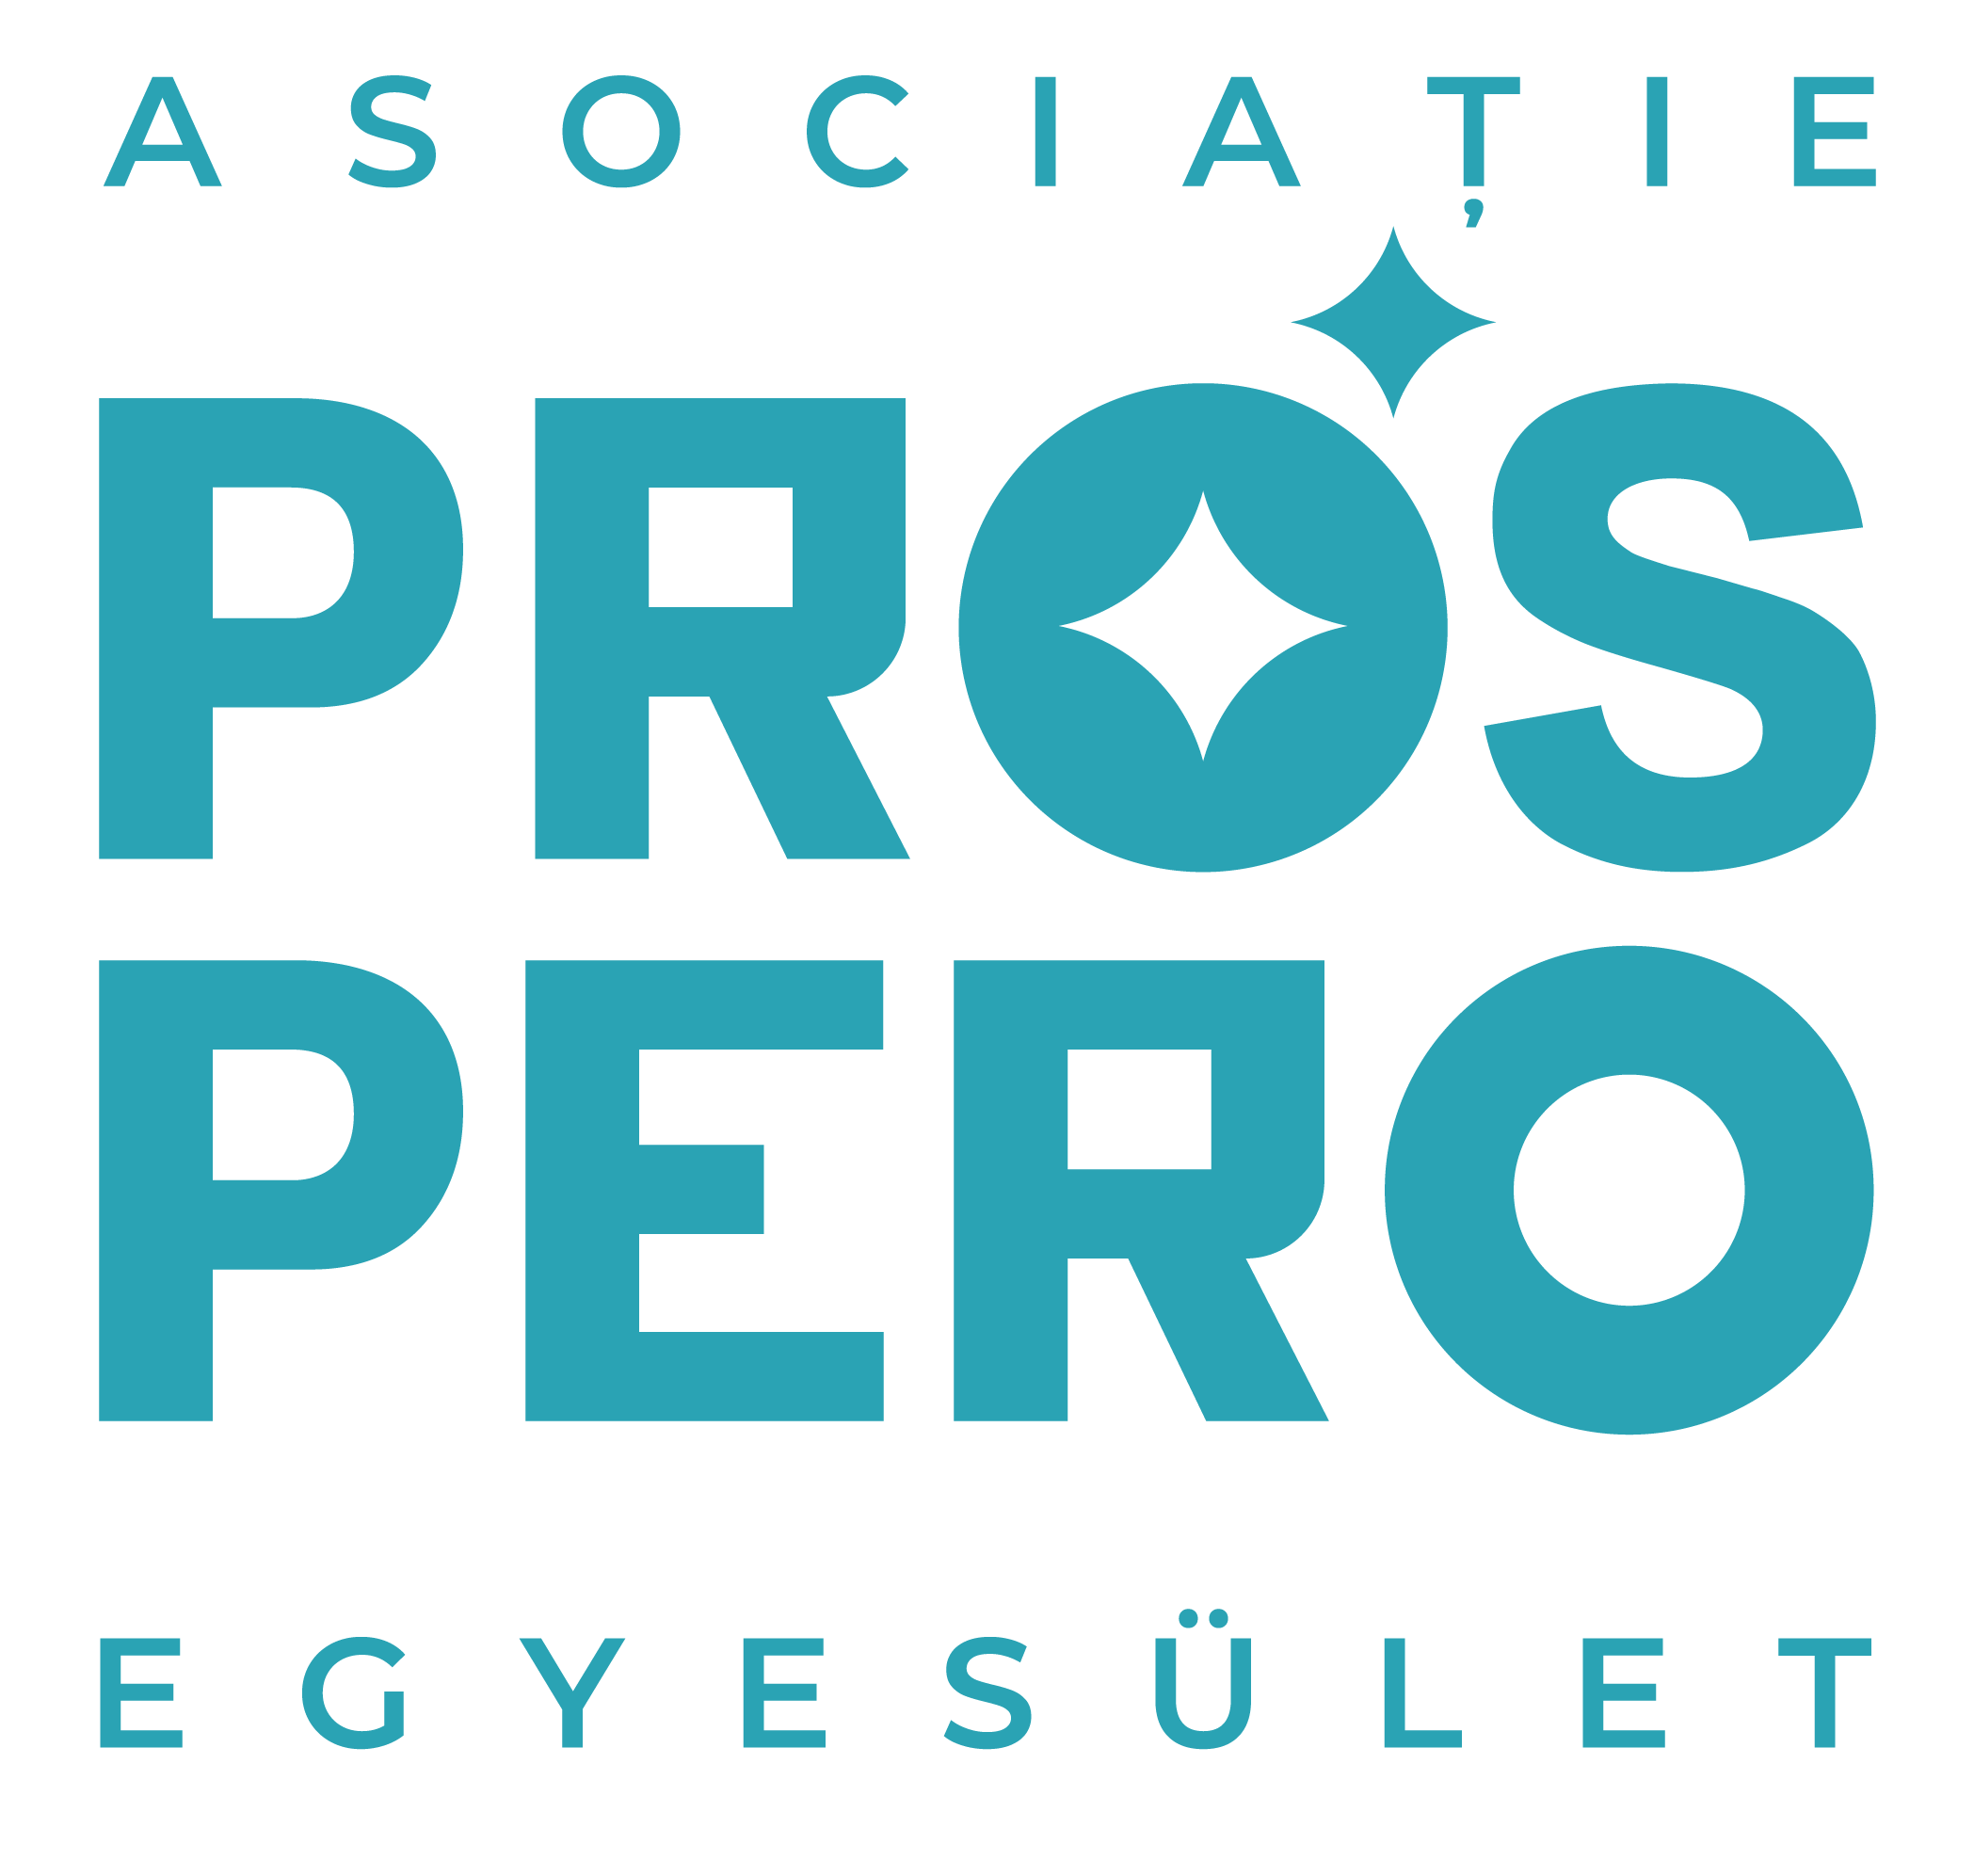 Prospero Kulturális és Ifjúsági Egyesület